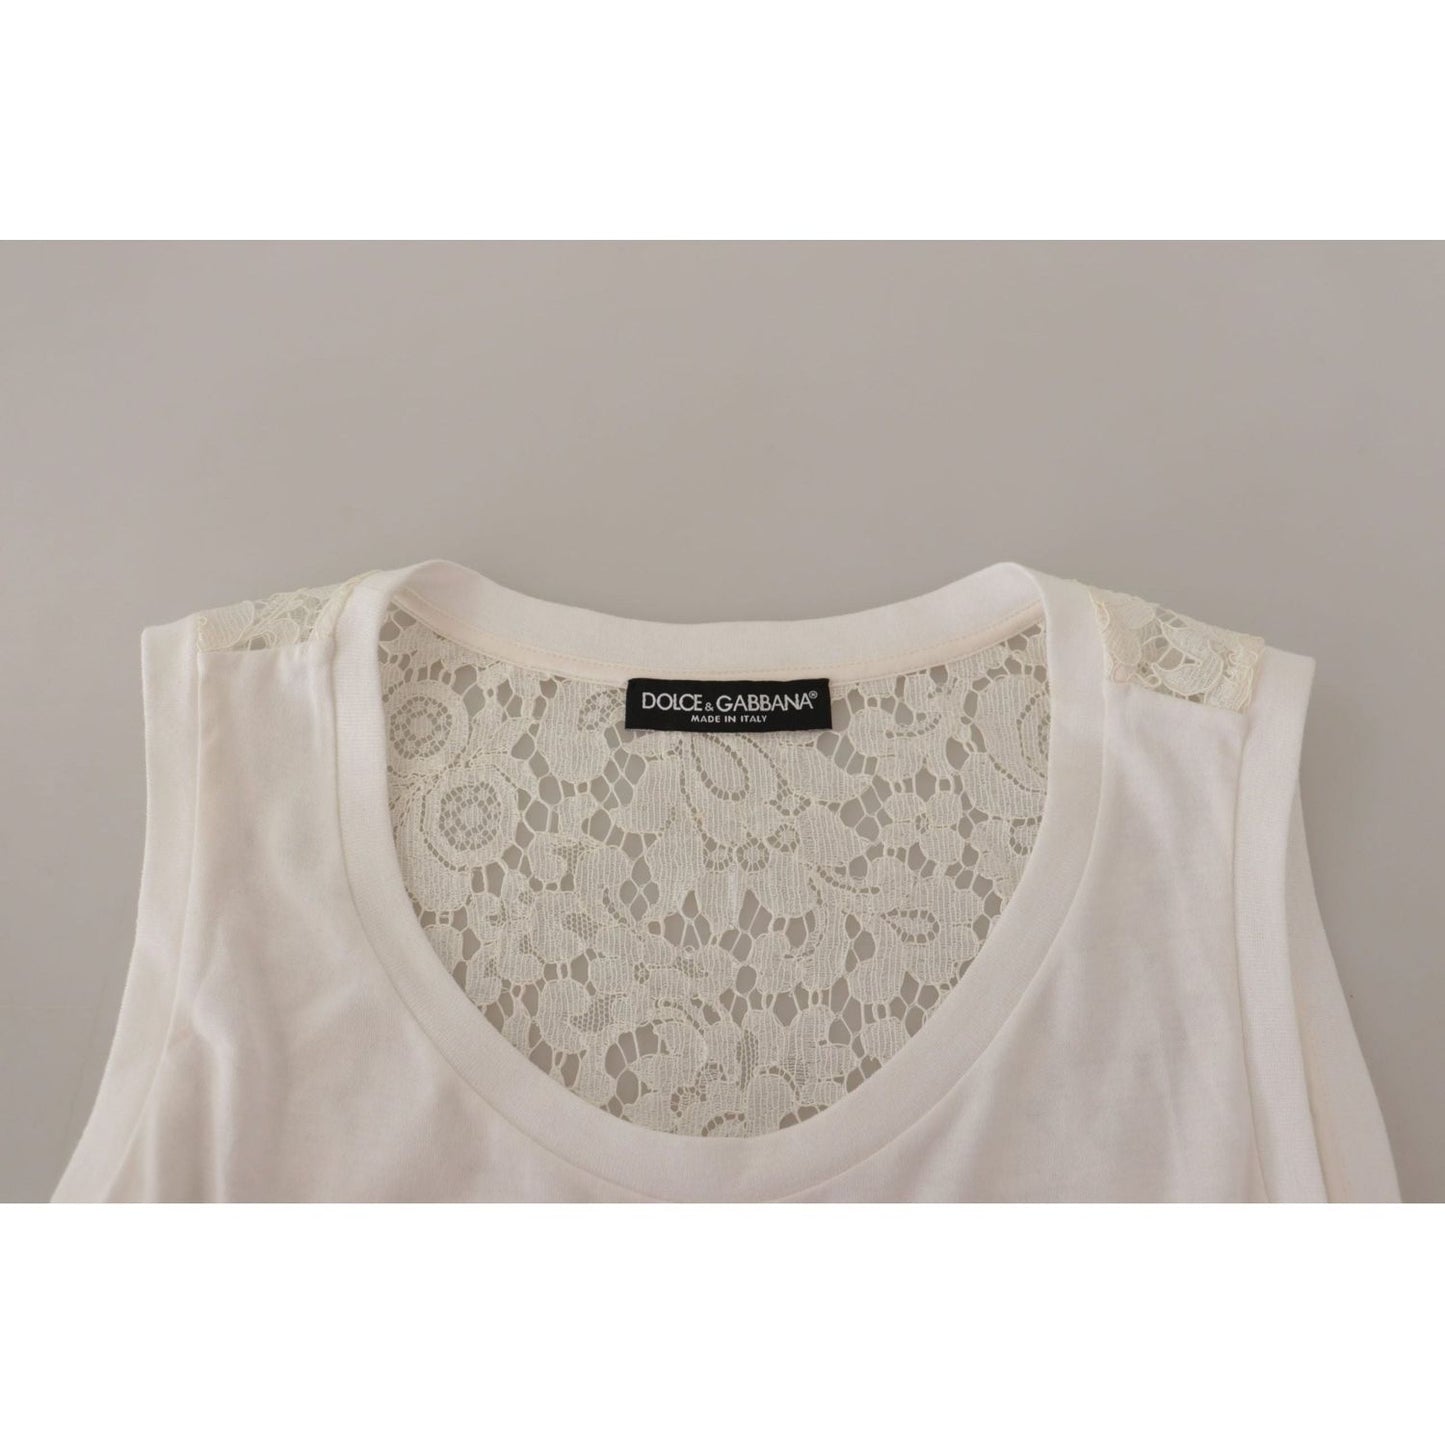 Dolce & Gabbana Elegant White Embellished Sleeveless Tee white-embellished-embroidered-print-blouse-t-shirt